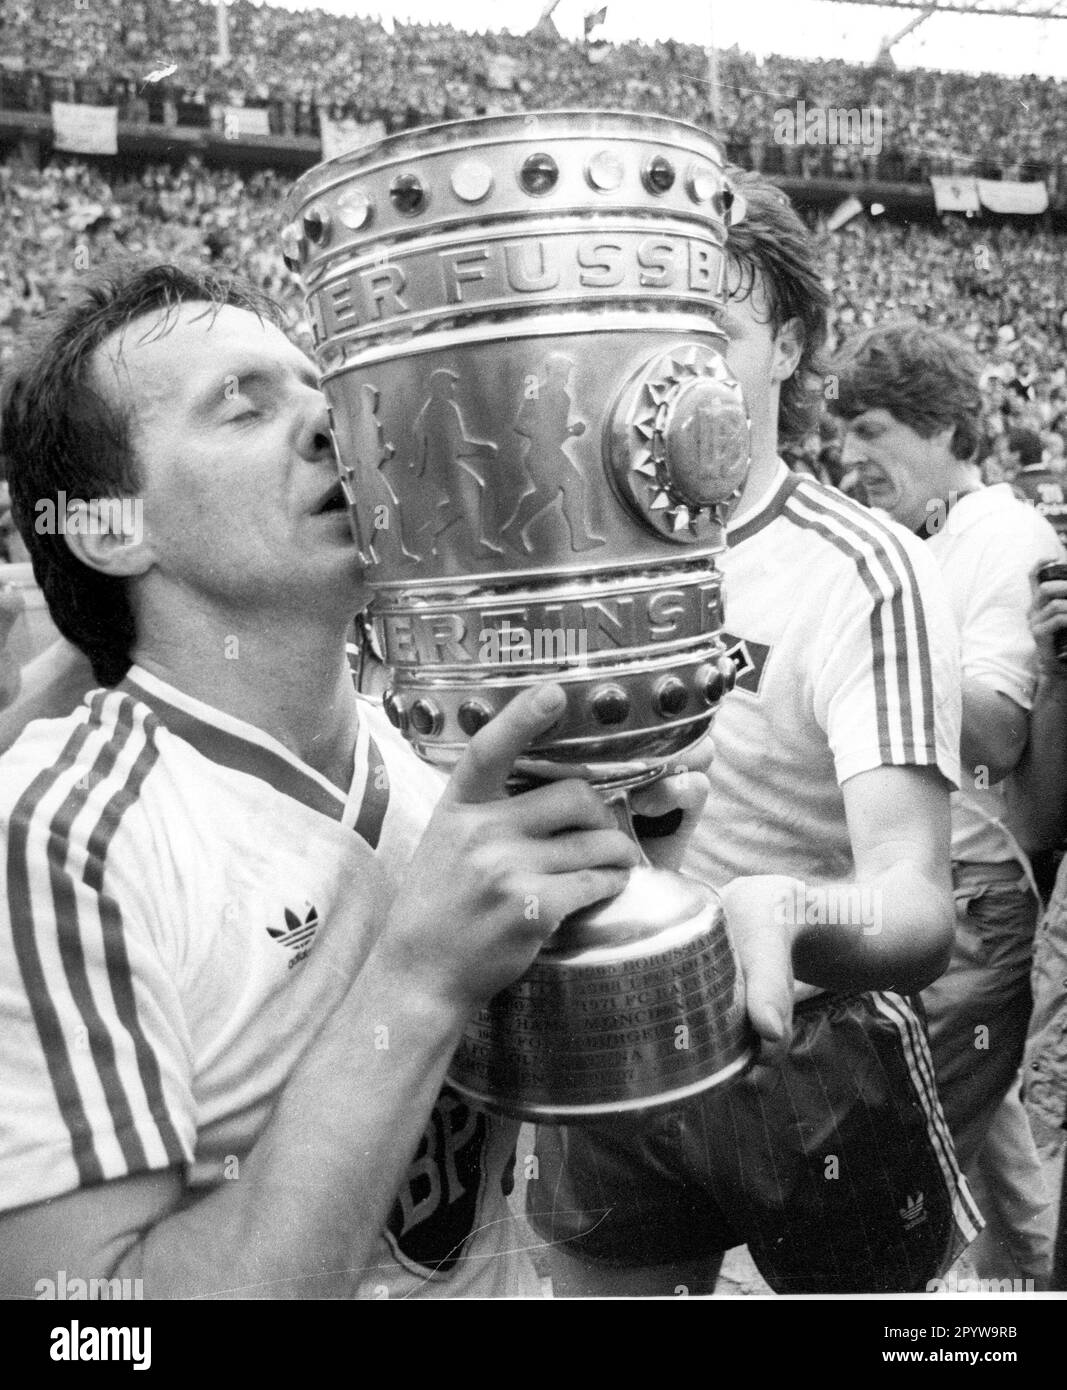 Finale de coupe DFB : Hamburger SV - Stuttgarter Kickers 3:1 /20.06.1987/ Miroslaw Okonski (HSV) embrasse la coupe , [traduction automatique] Banque D'Images